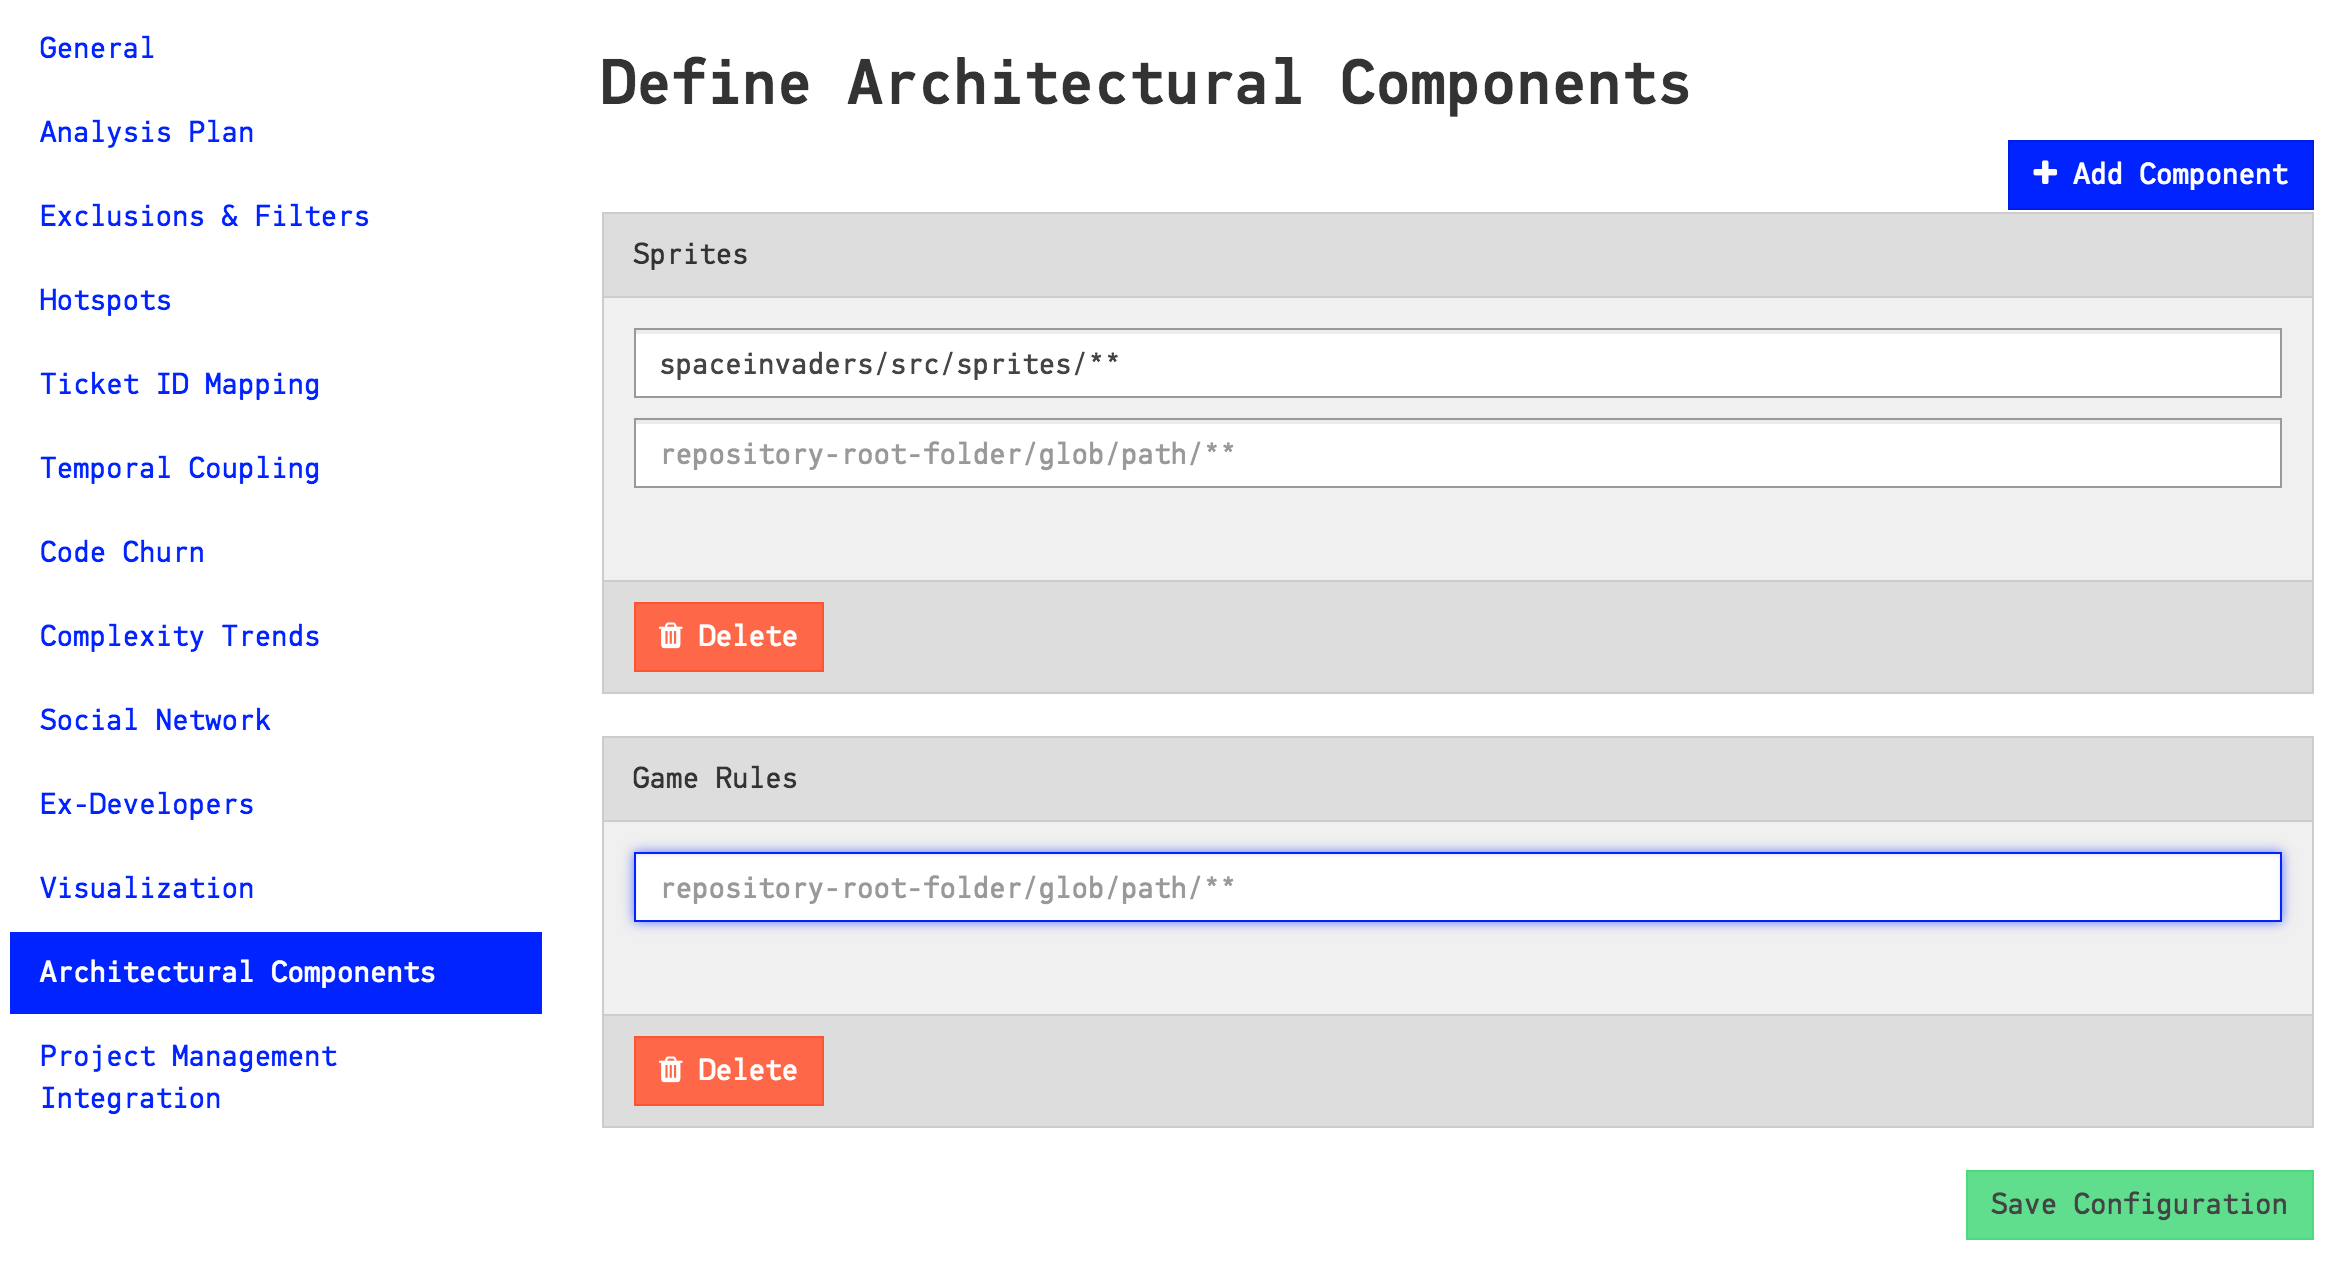 Configure architectural components